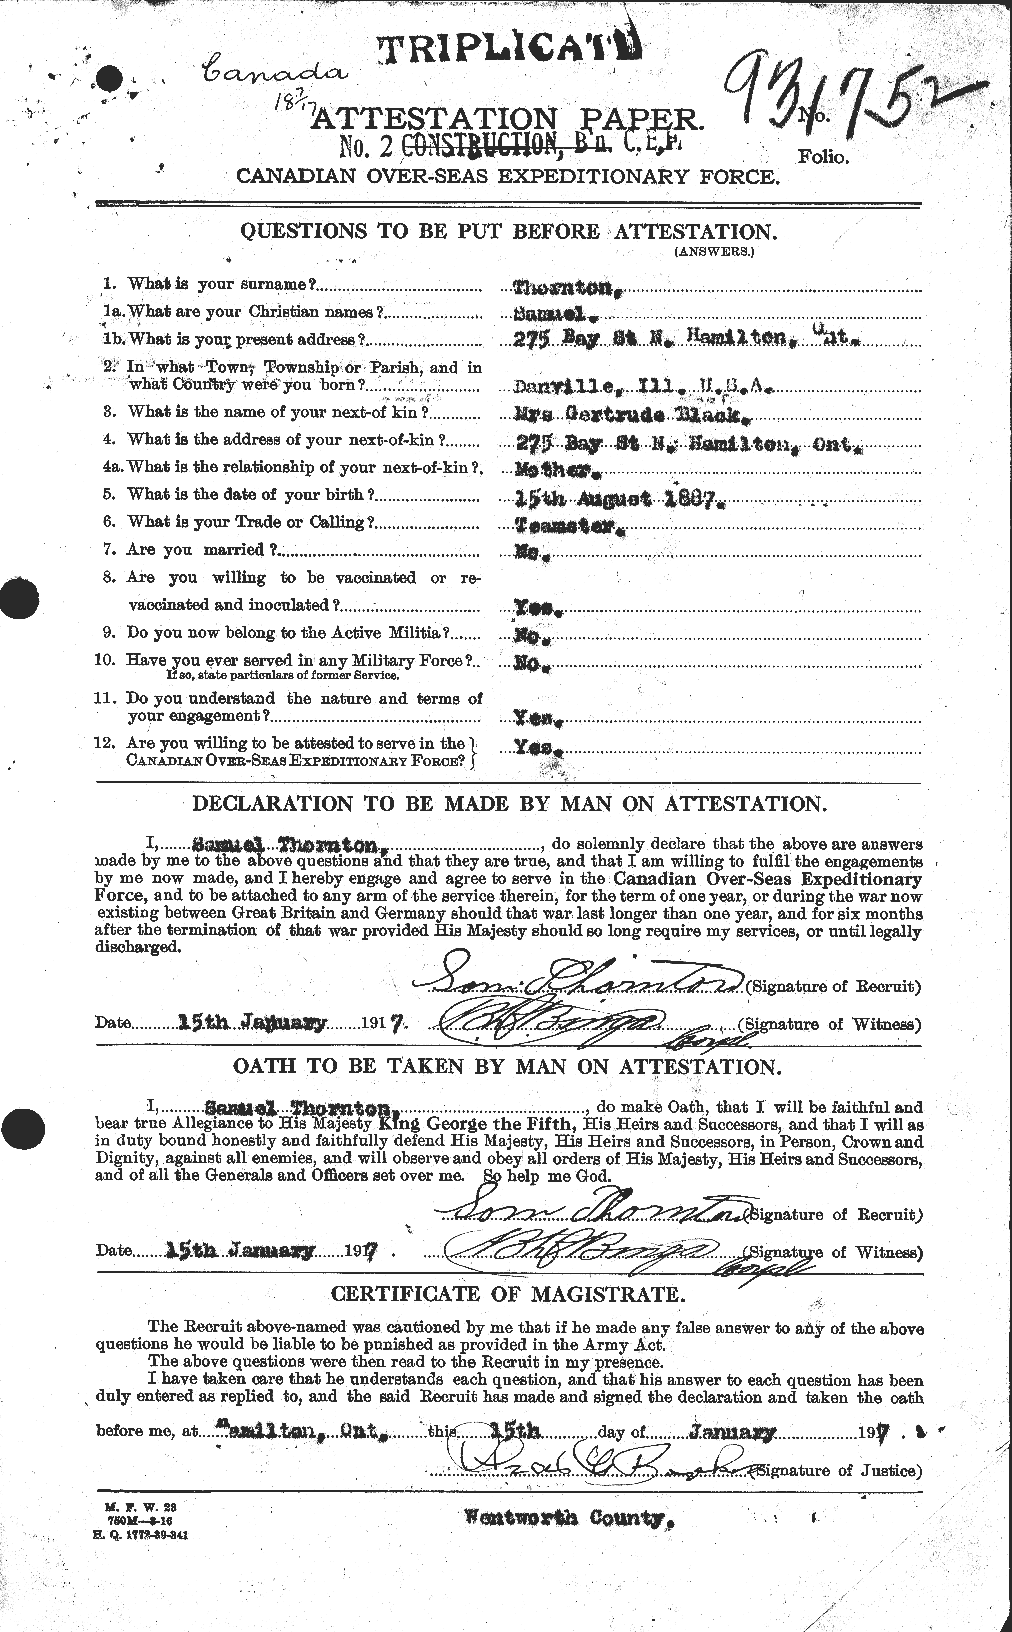 Dossiers du Personnel de la Première Guerre mondiale - CEC 636886a